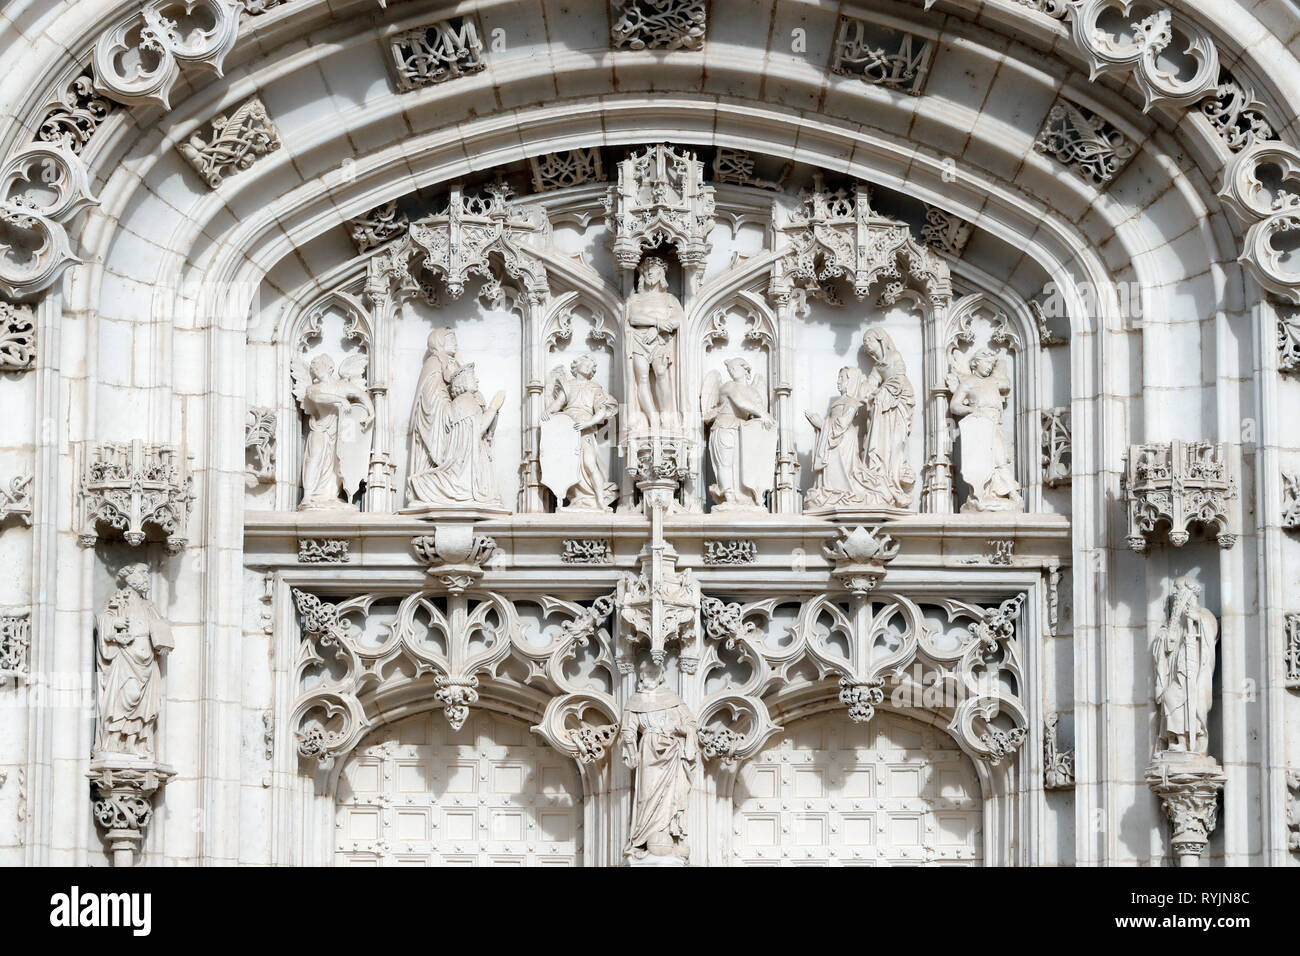 Das königliche Kloster von Brou. Die Kirche ist ein Meisterwerk der Spätgotik. Western Portal. Bourg-en-Bresse. Frankreich. Stockfoto